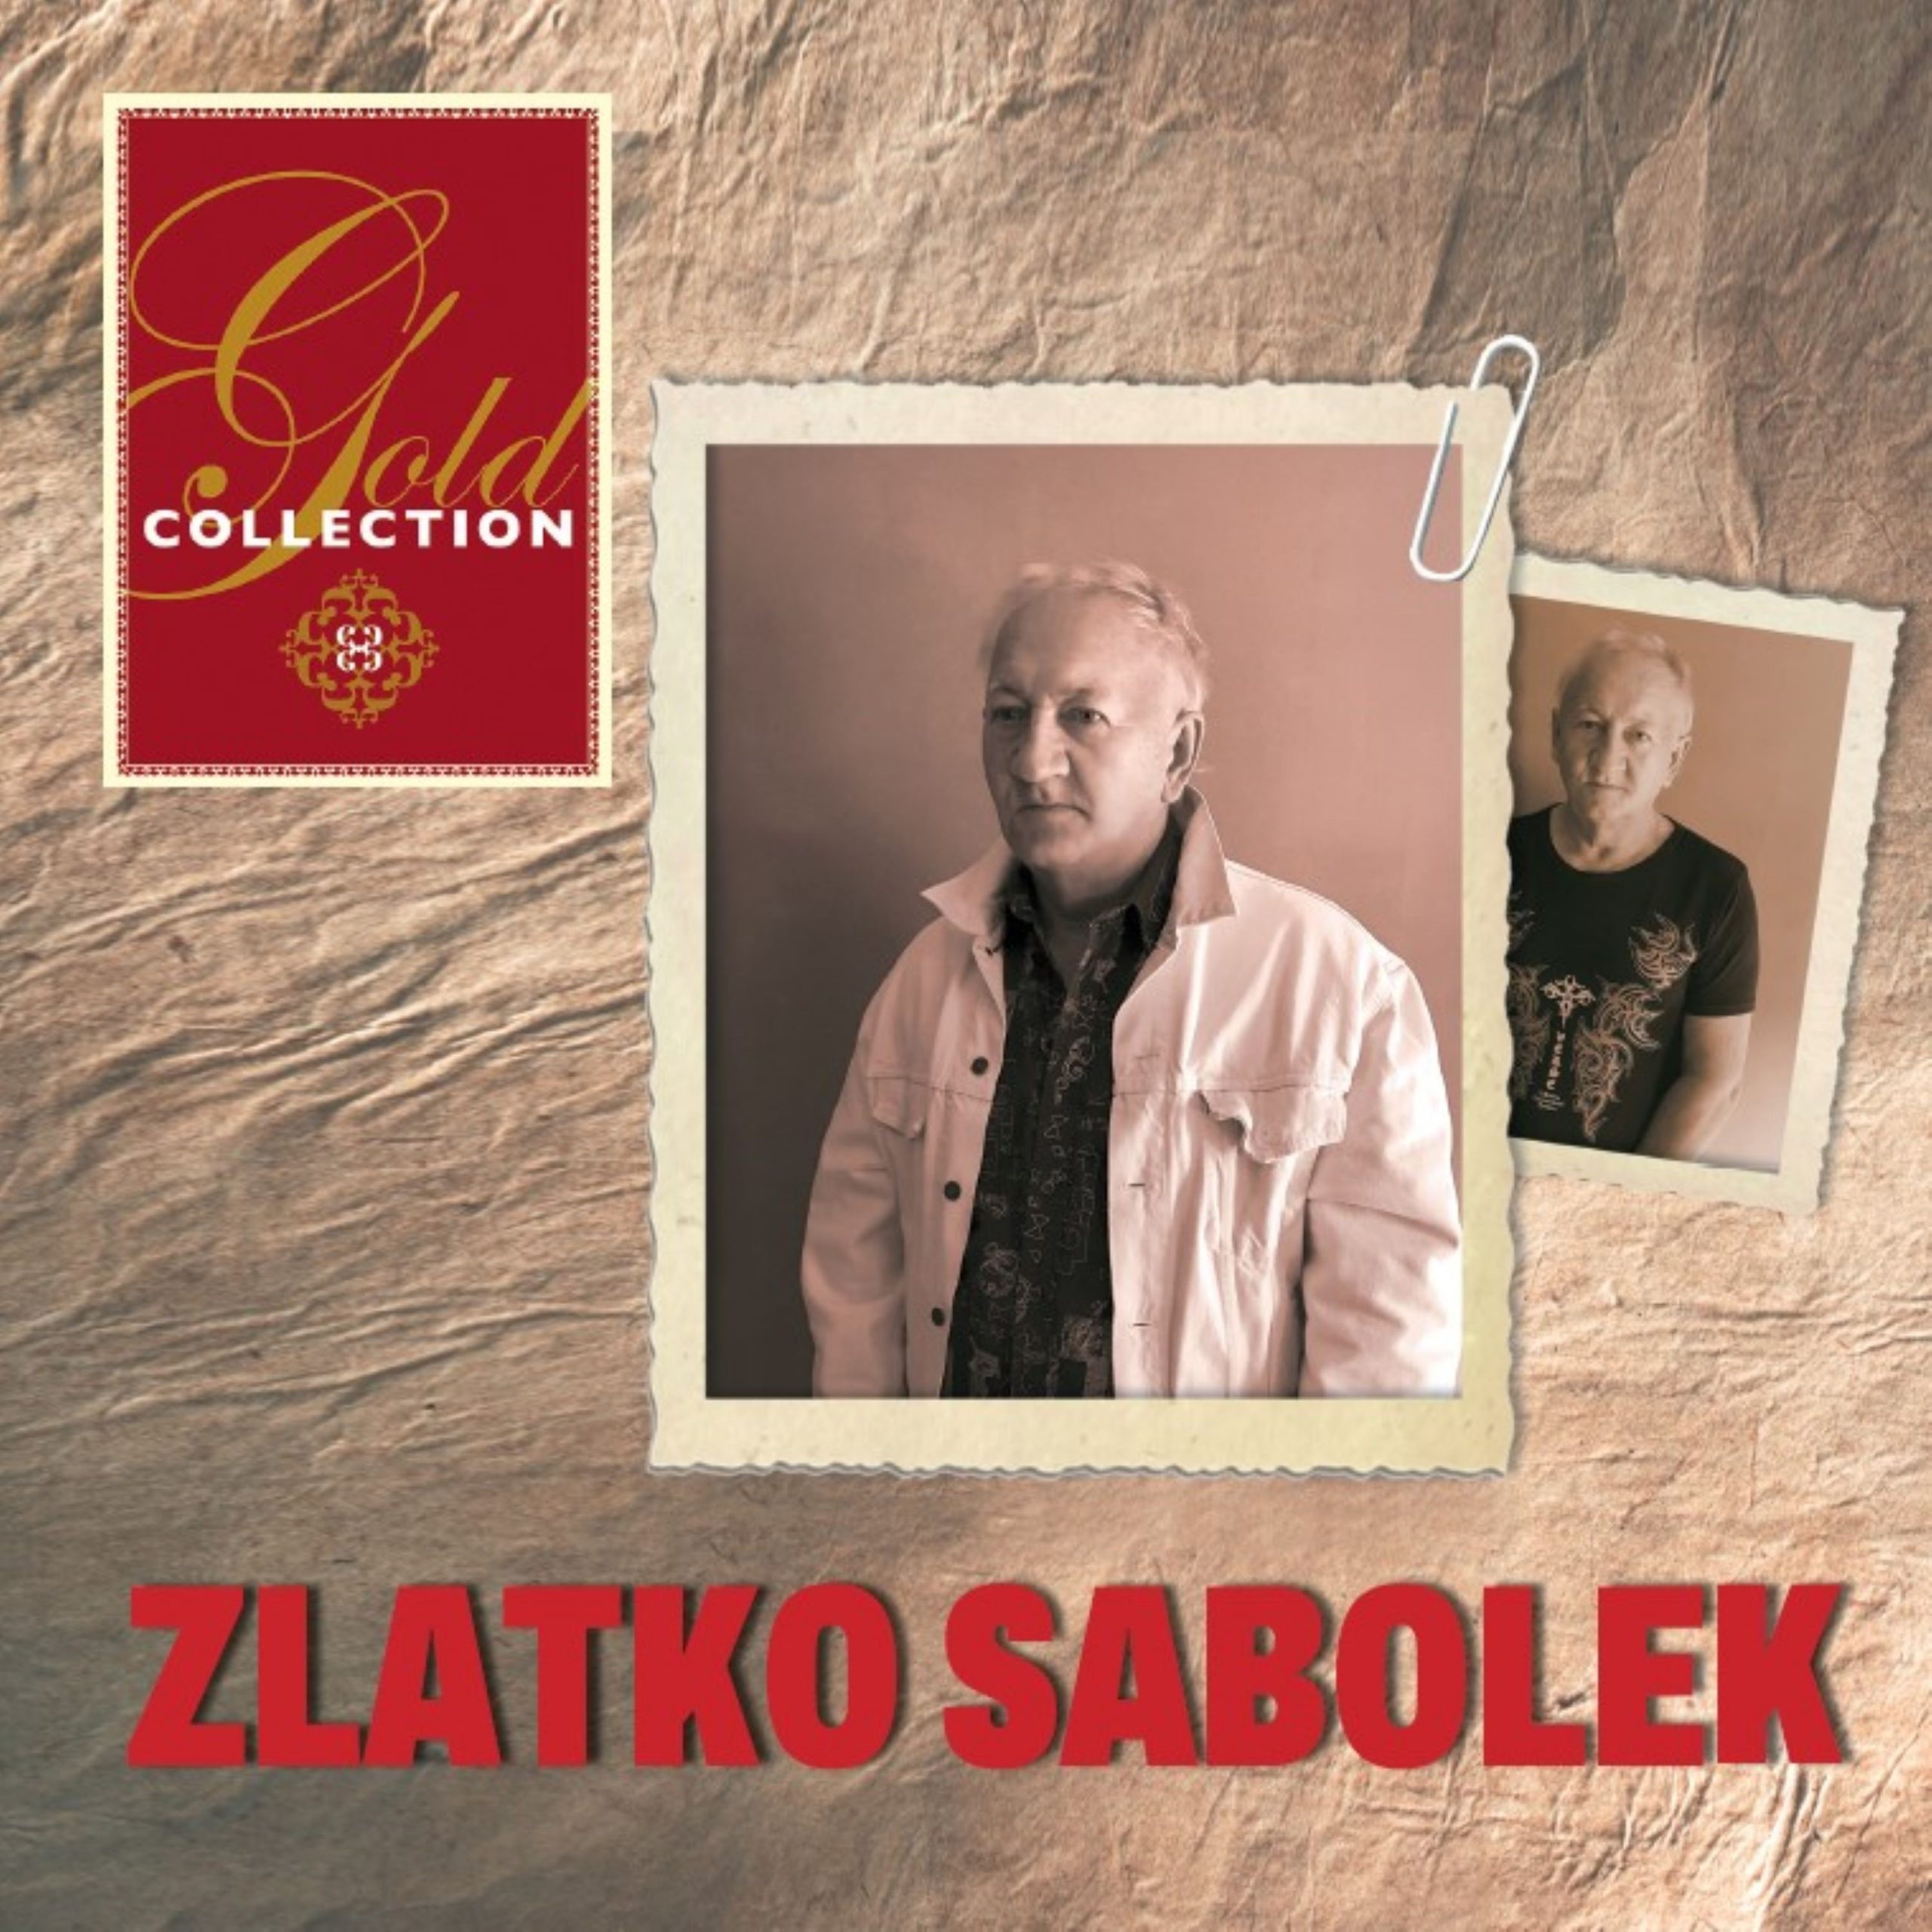 Od danas je u prodaji dvostruka kompilacija “Gold Collection – Zlatko Sabolek”